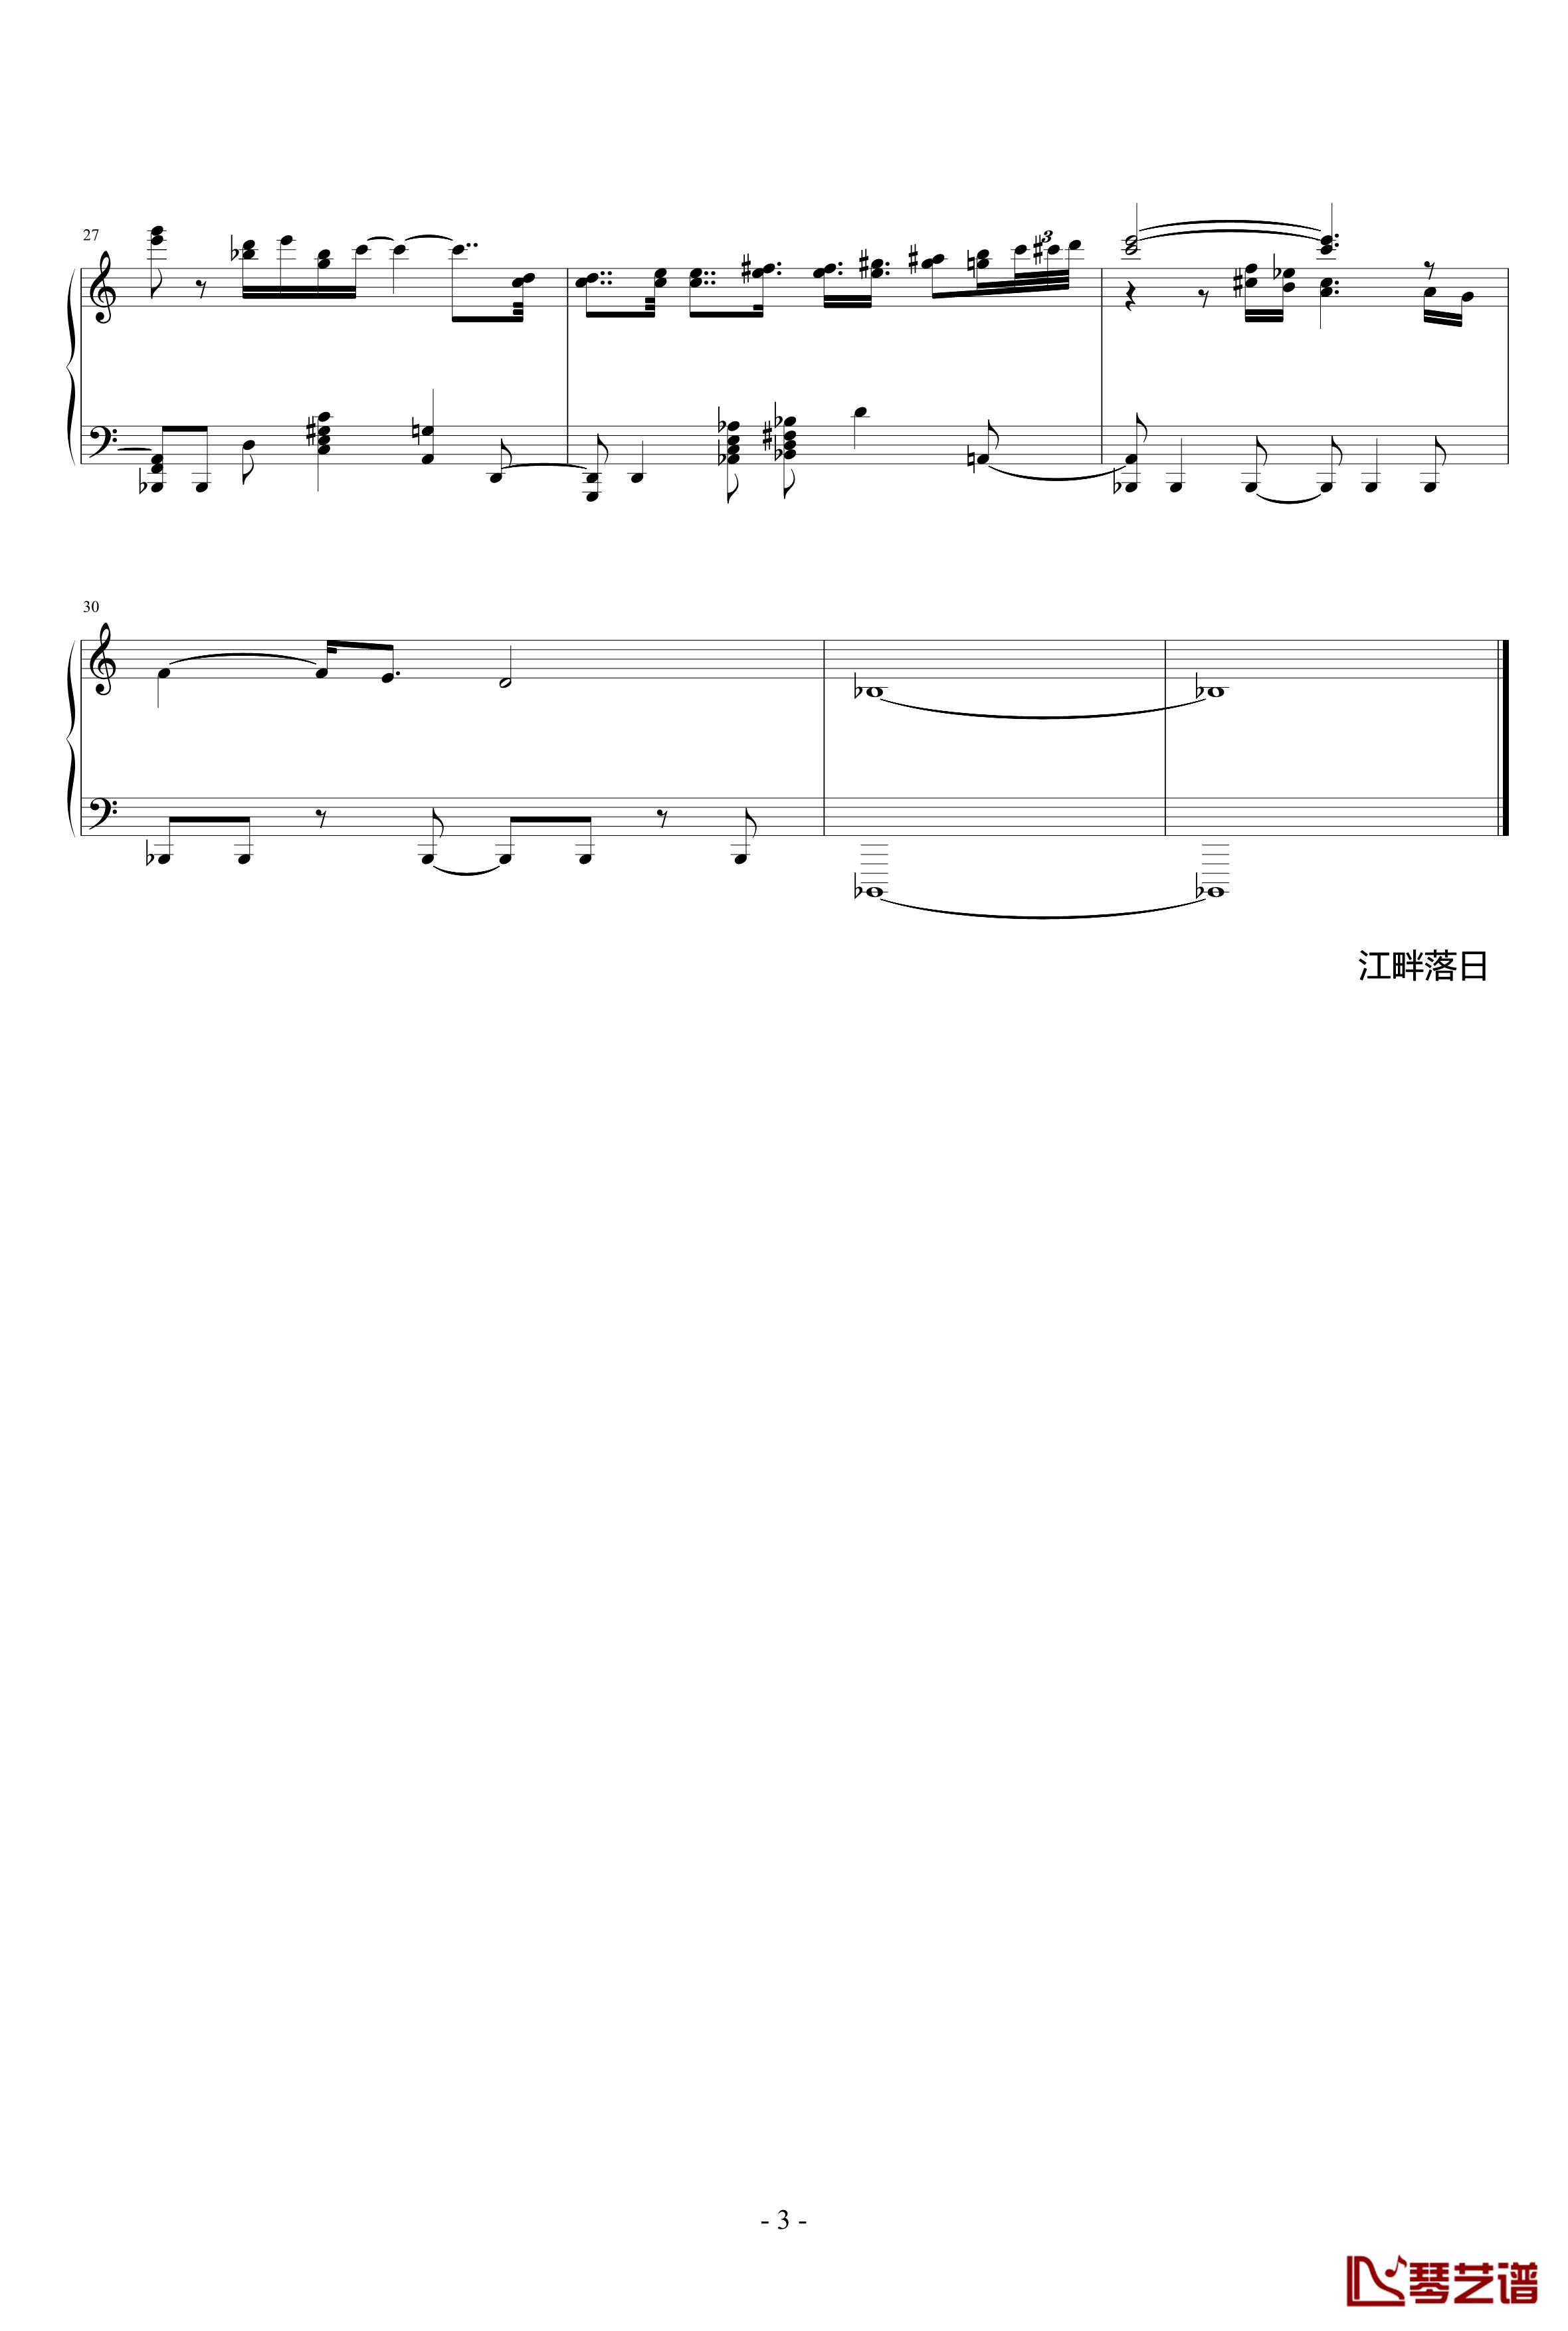 冥想集钢琴谱-修改-升c小调36